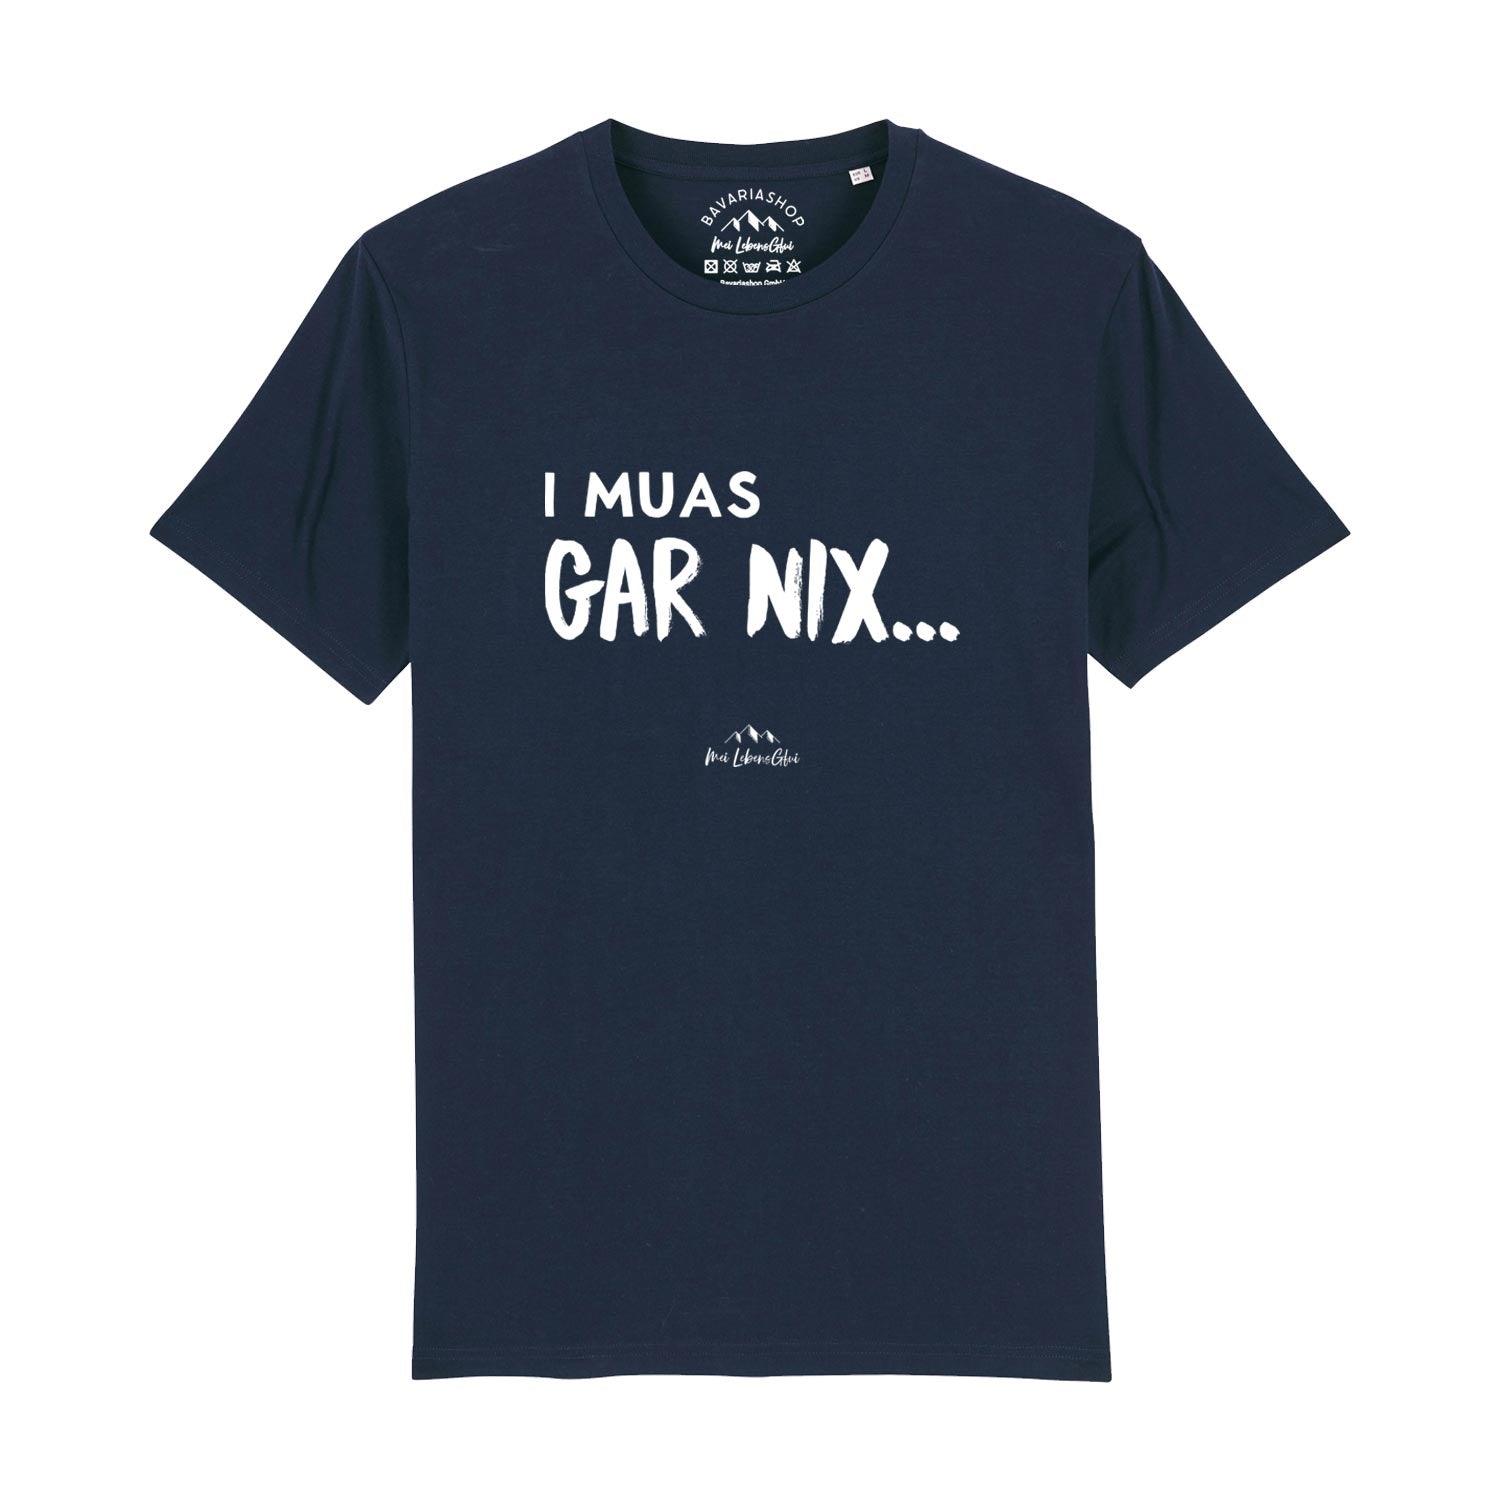 Herren T-Shirt "I muas gar nix…" - bavariashop - mei LebensGfui